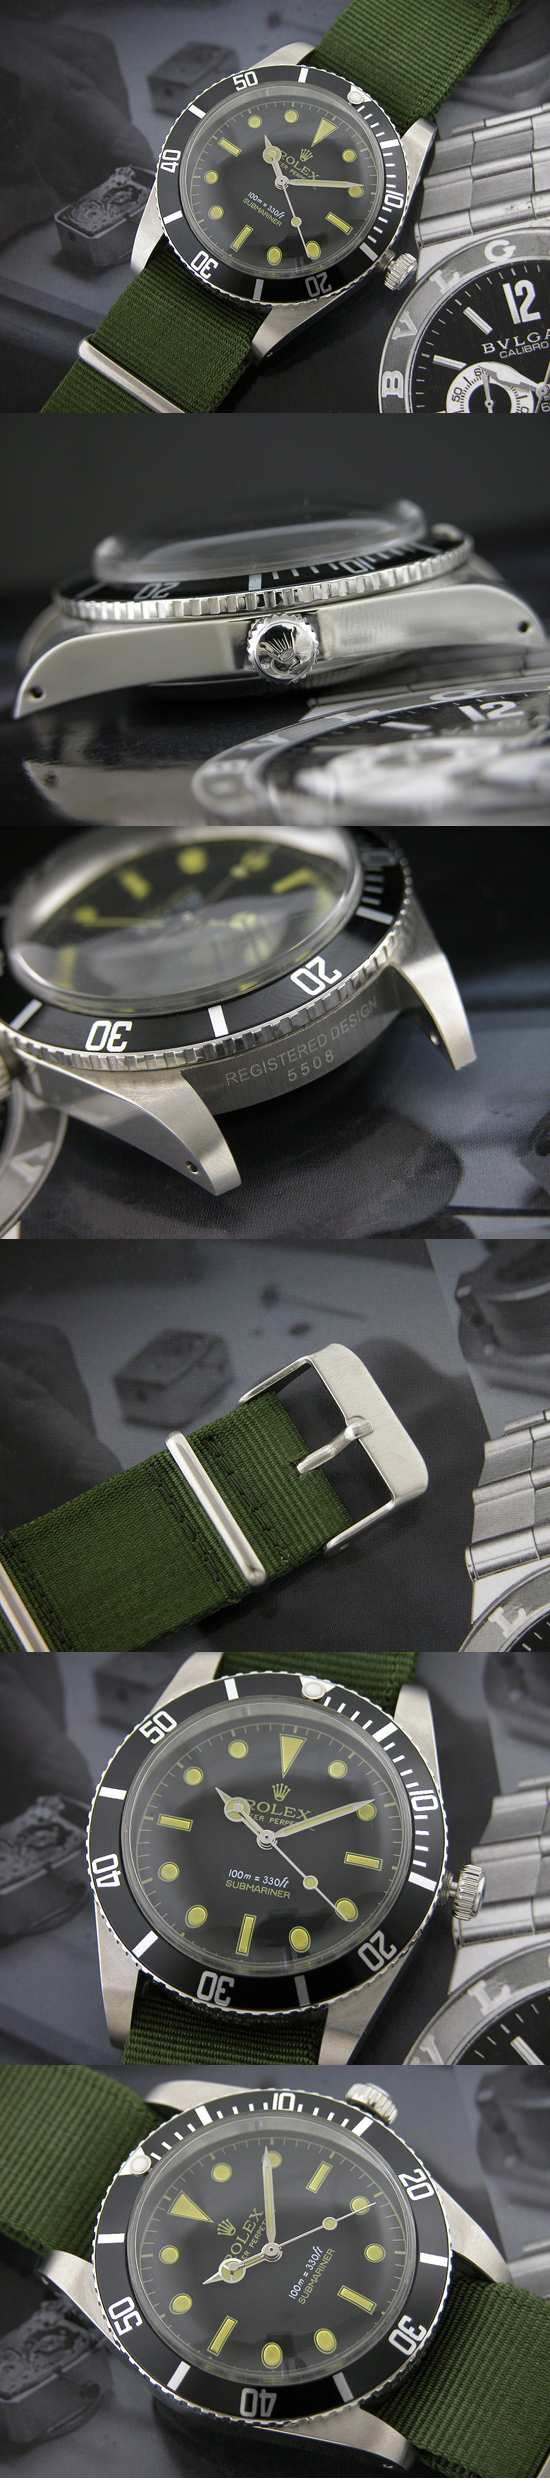 おしゃれなブランド時計がロレックス-サブマリーナ-ROLEX-16610-38-男性用を提供します.